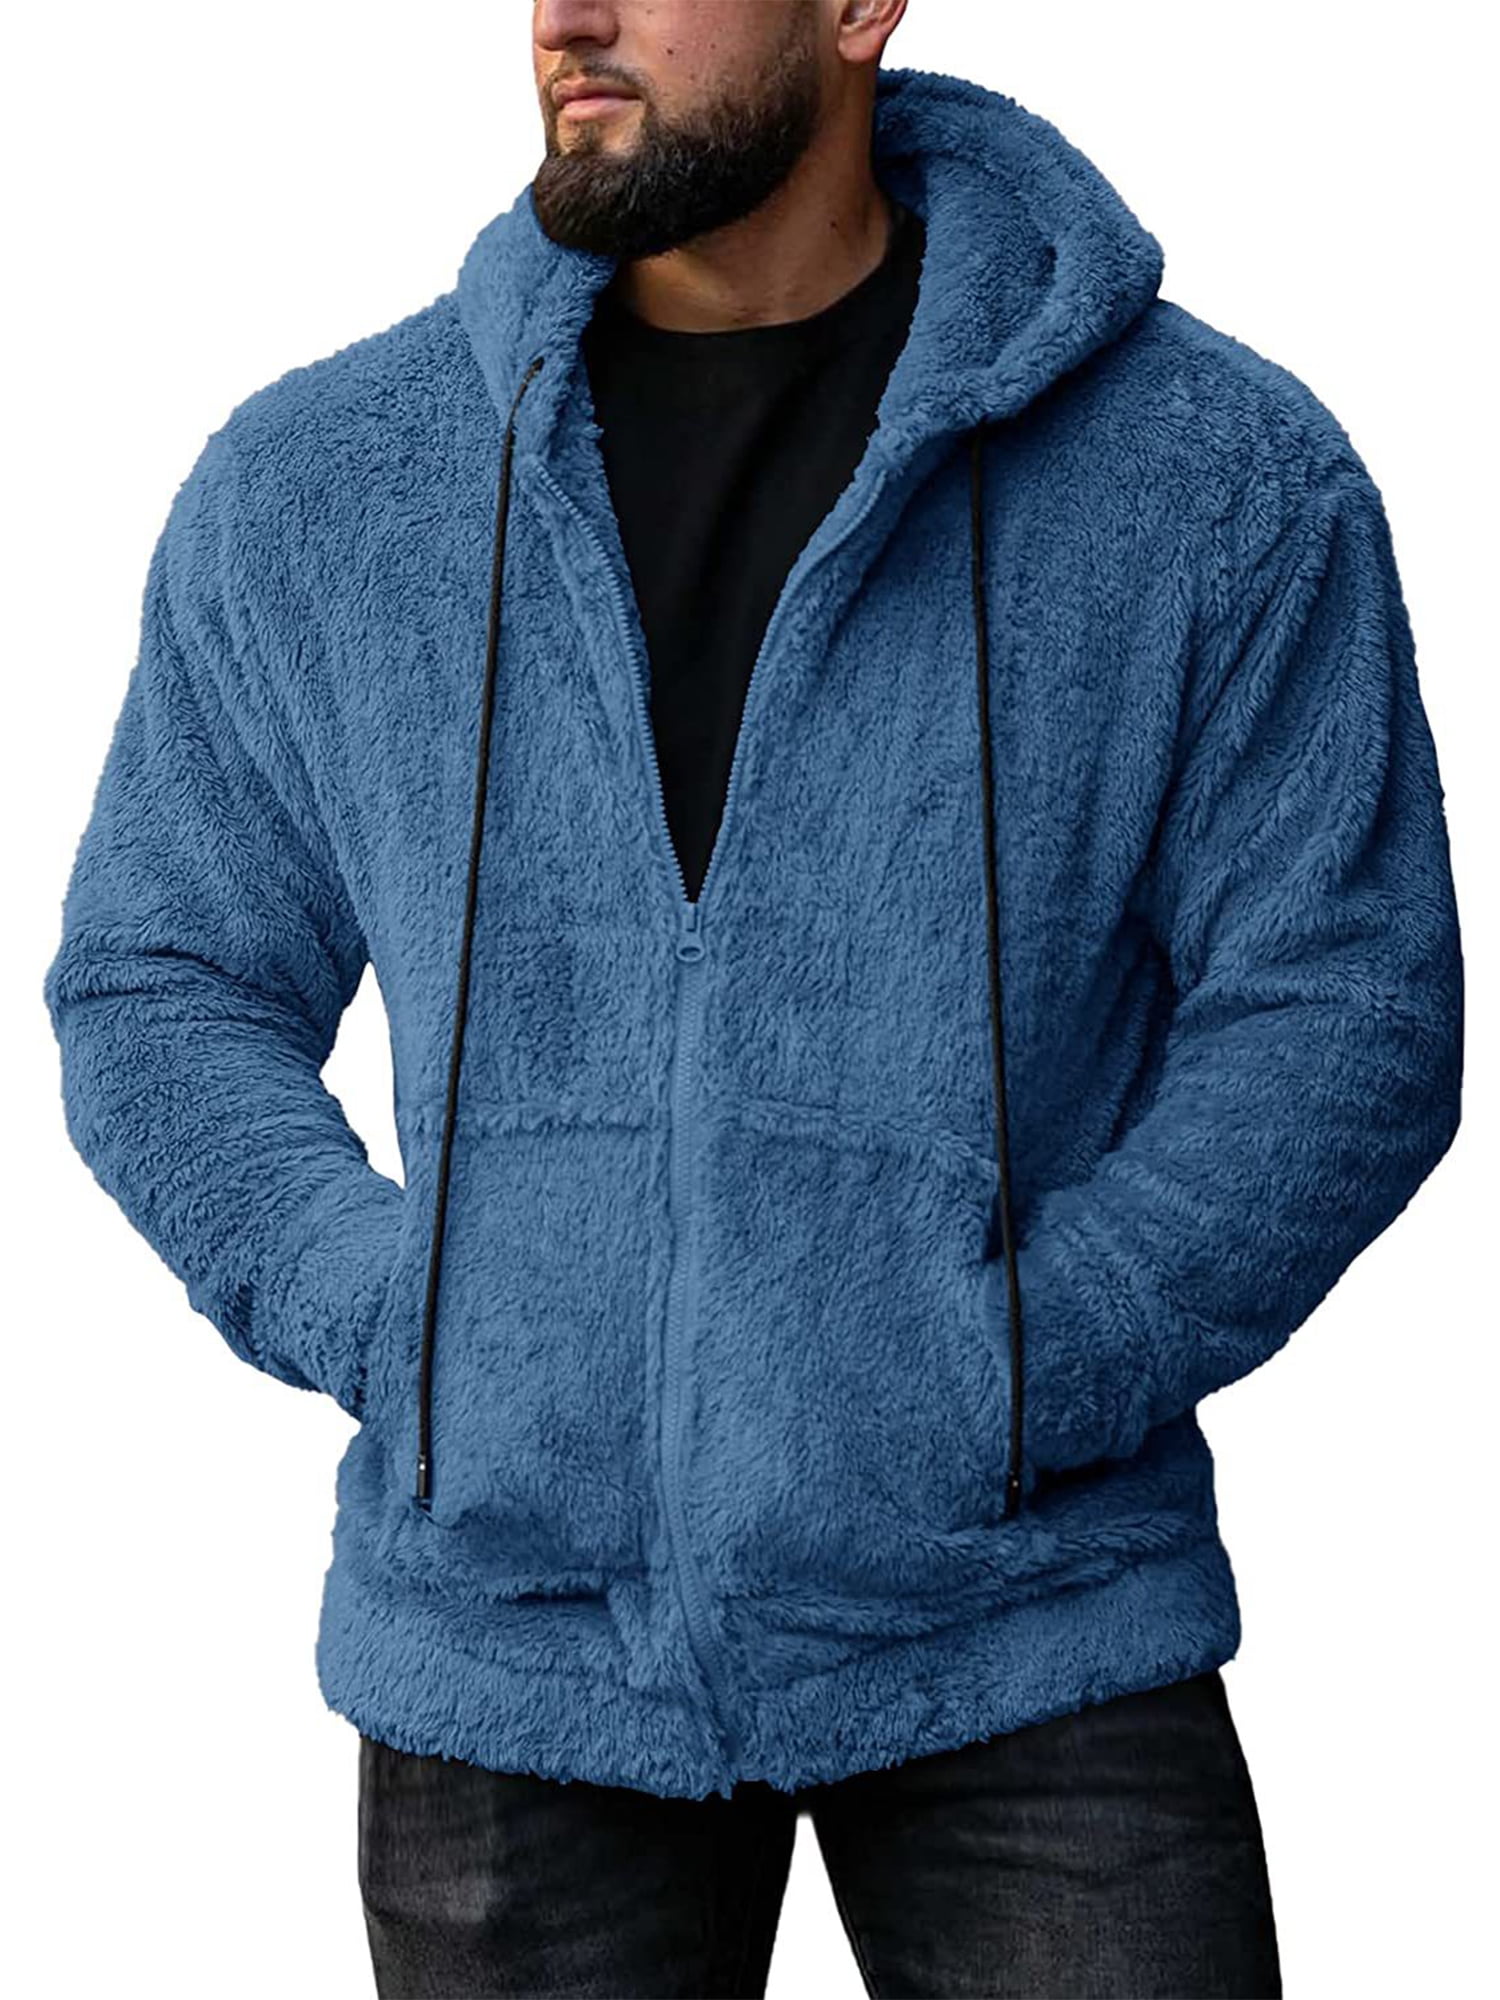 Capreze Hoodies for Men Zip Up Sweashirts Sherpa Hooded Jacket Coat ...